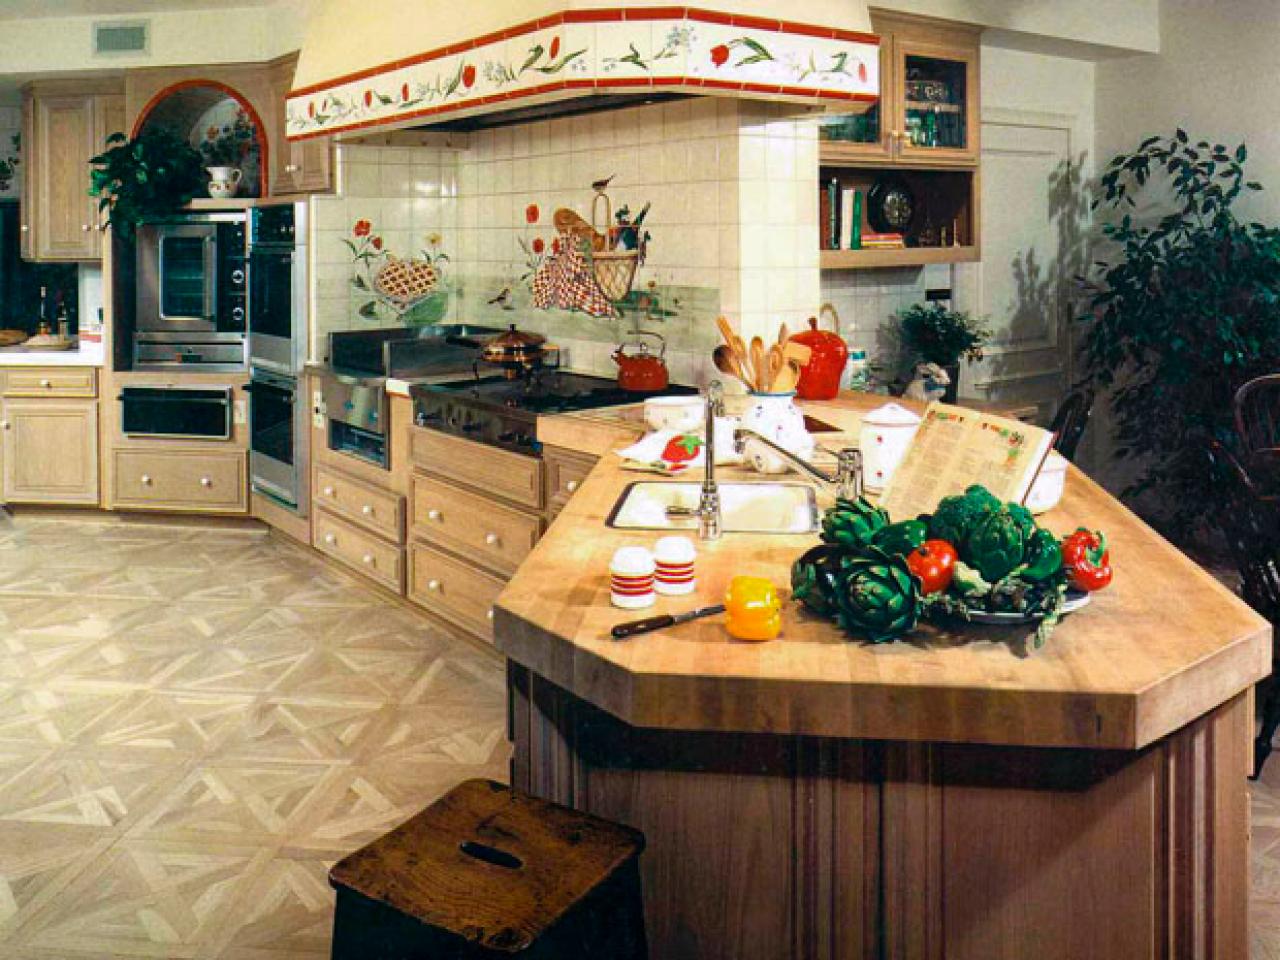 SP0204 RX jaivin kitchen s4x3.jpg.rend .hgtvcom.1280.960